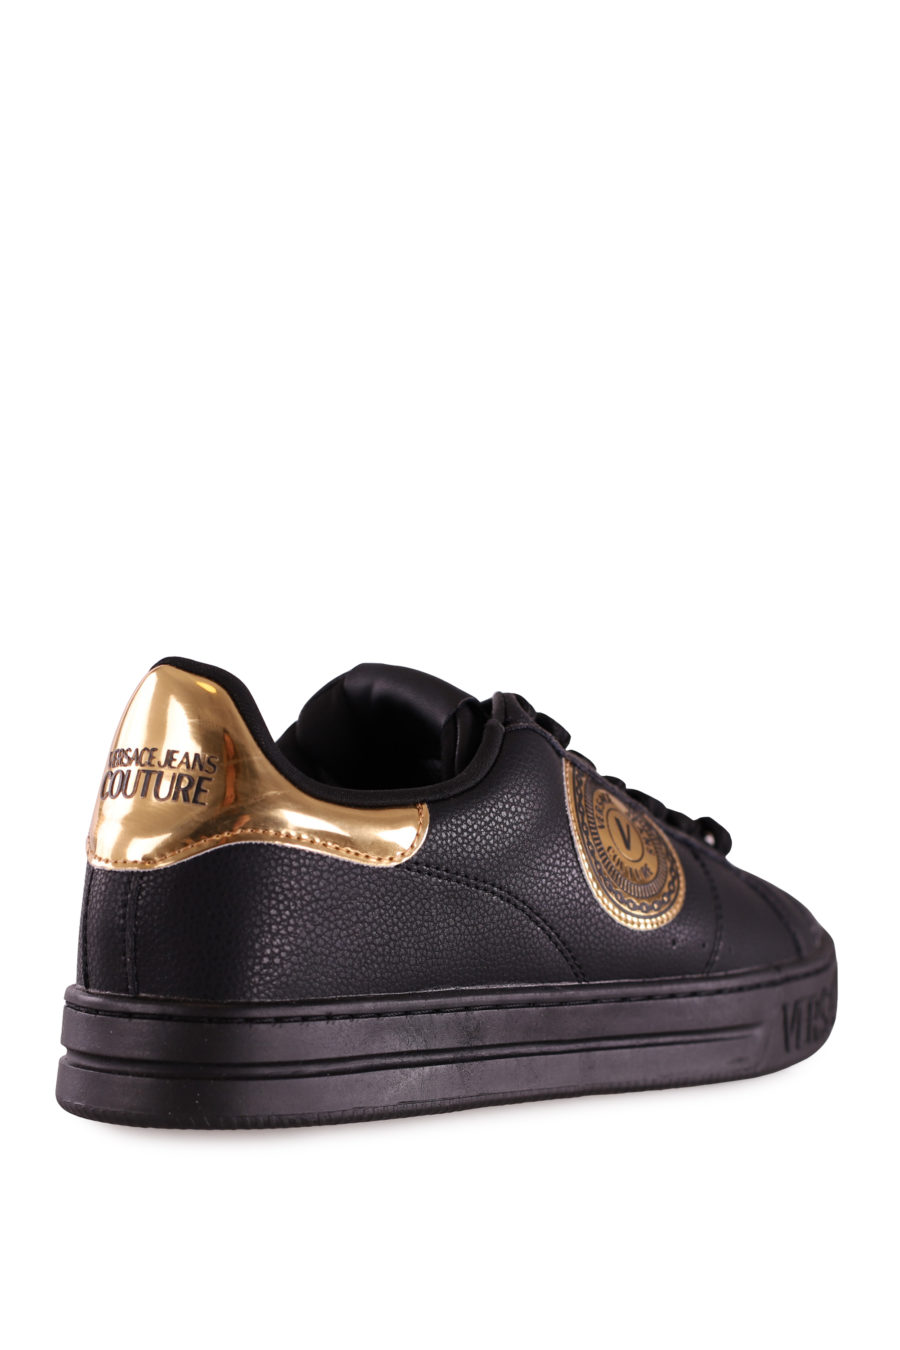 Zapatillas negras con cordones y logotipo dorado - 60adf4e7d1e9b7dcfae4dc9485c3cebc54e46c91